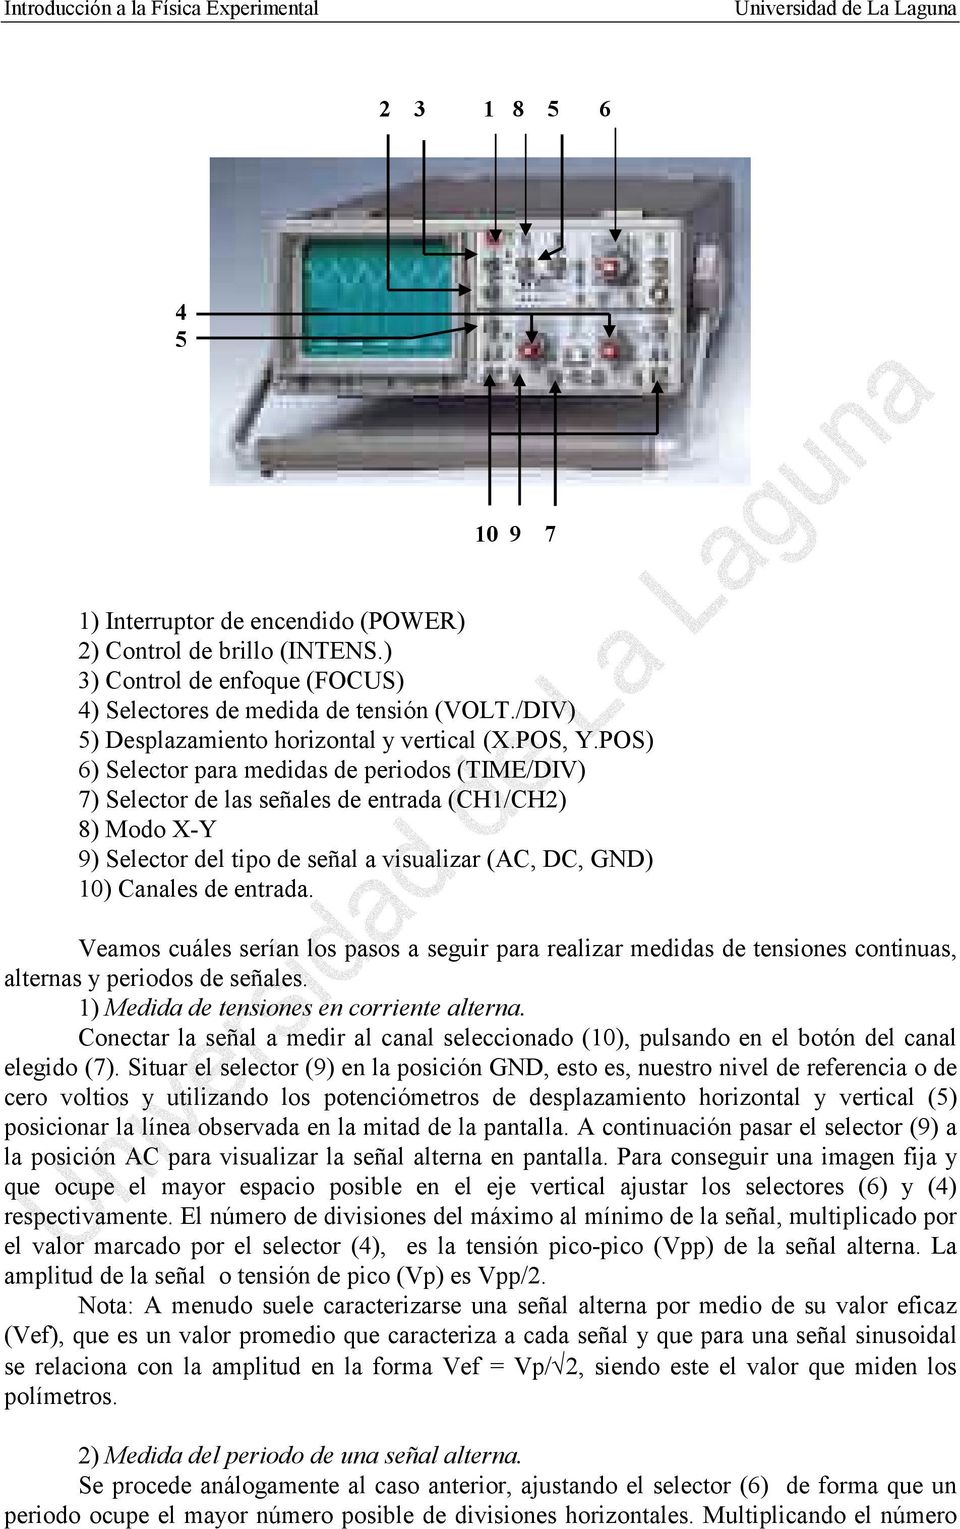 POS) 6) Selector para medidas de periodos (TIME/DIV) 7) Selector de las señales de entrada (CH1/CH2) 8) Modo X-Y 9) Selector del tipo de señal a visualizar (AC, DC, GND) 10) Canales de entrada.